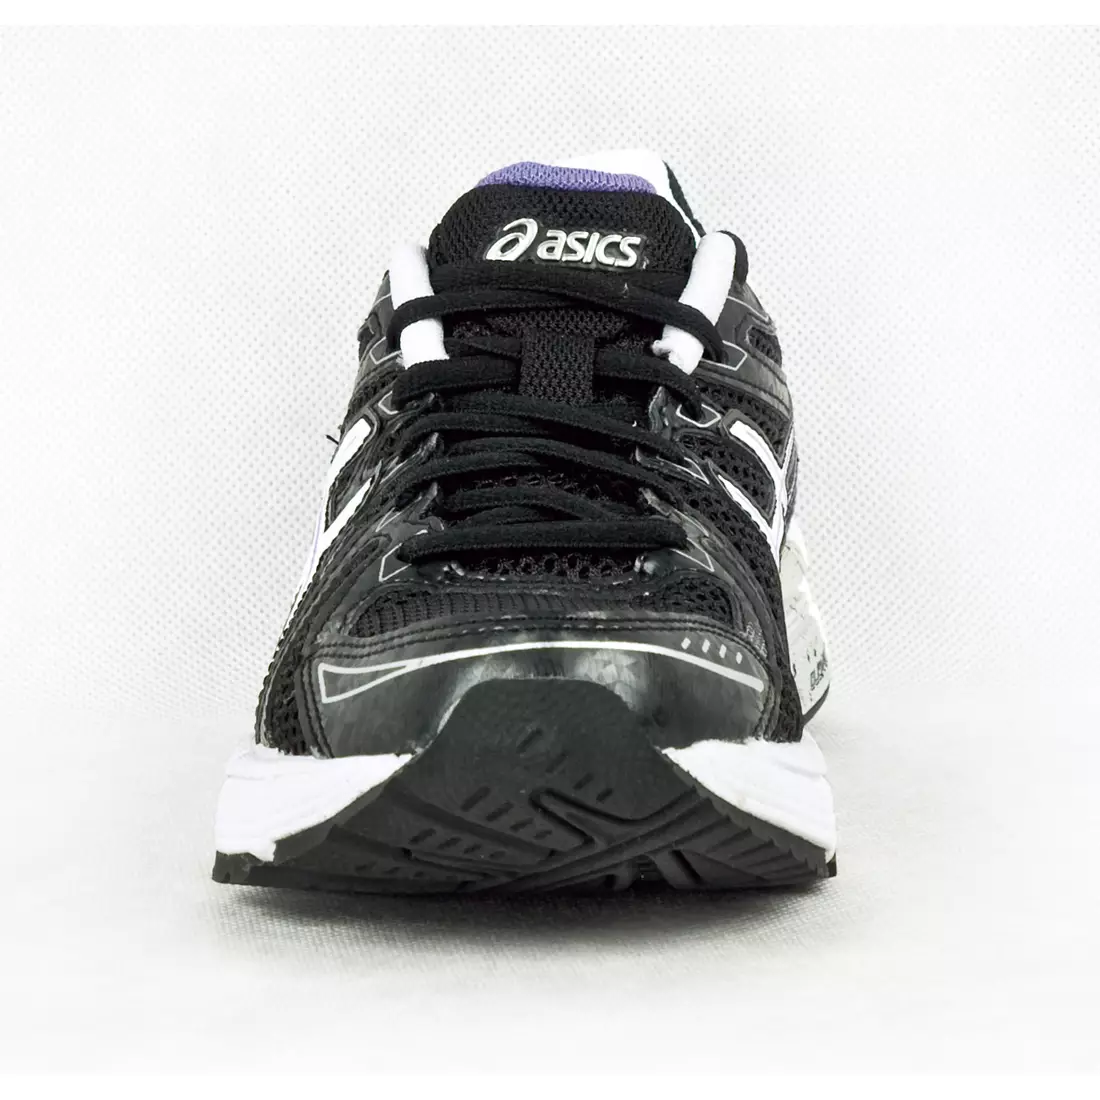 ASICS GEL PHOENIX 5 - dámská běžecká obuv 9001, barva: Černá